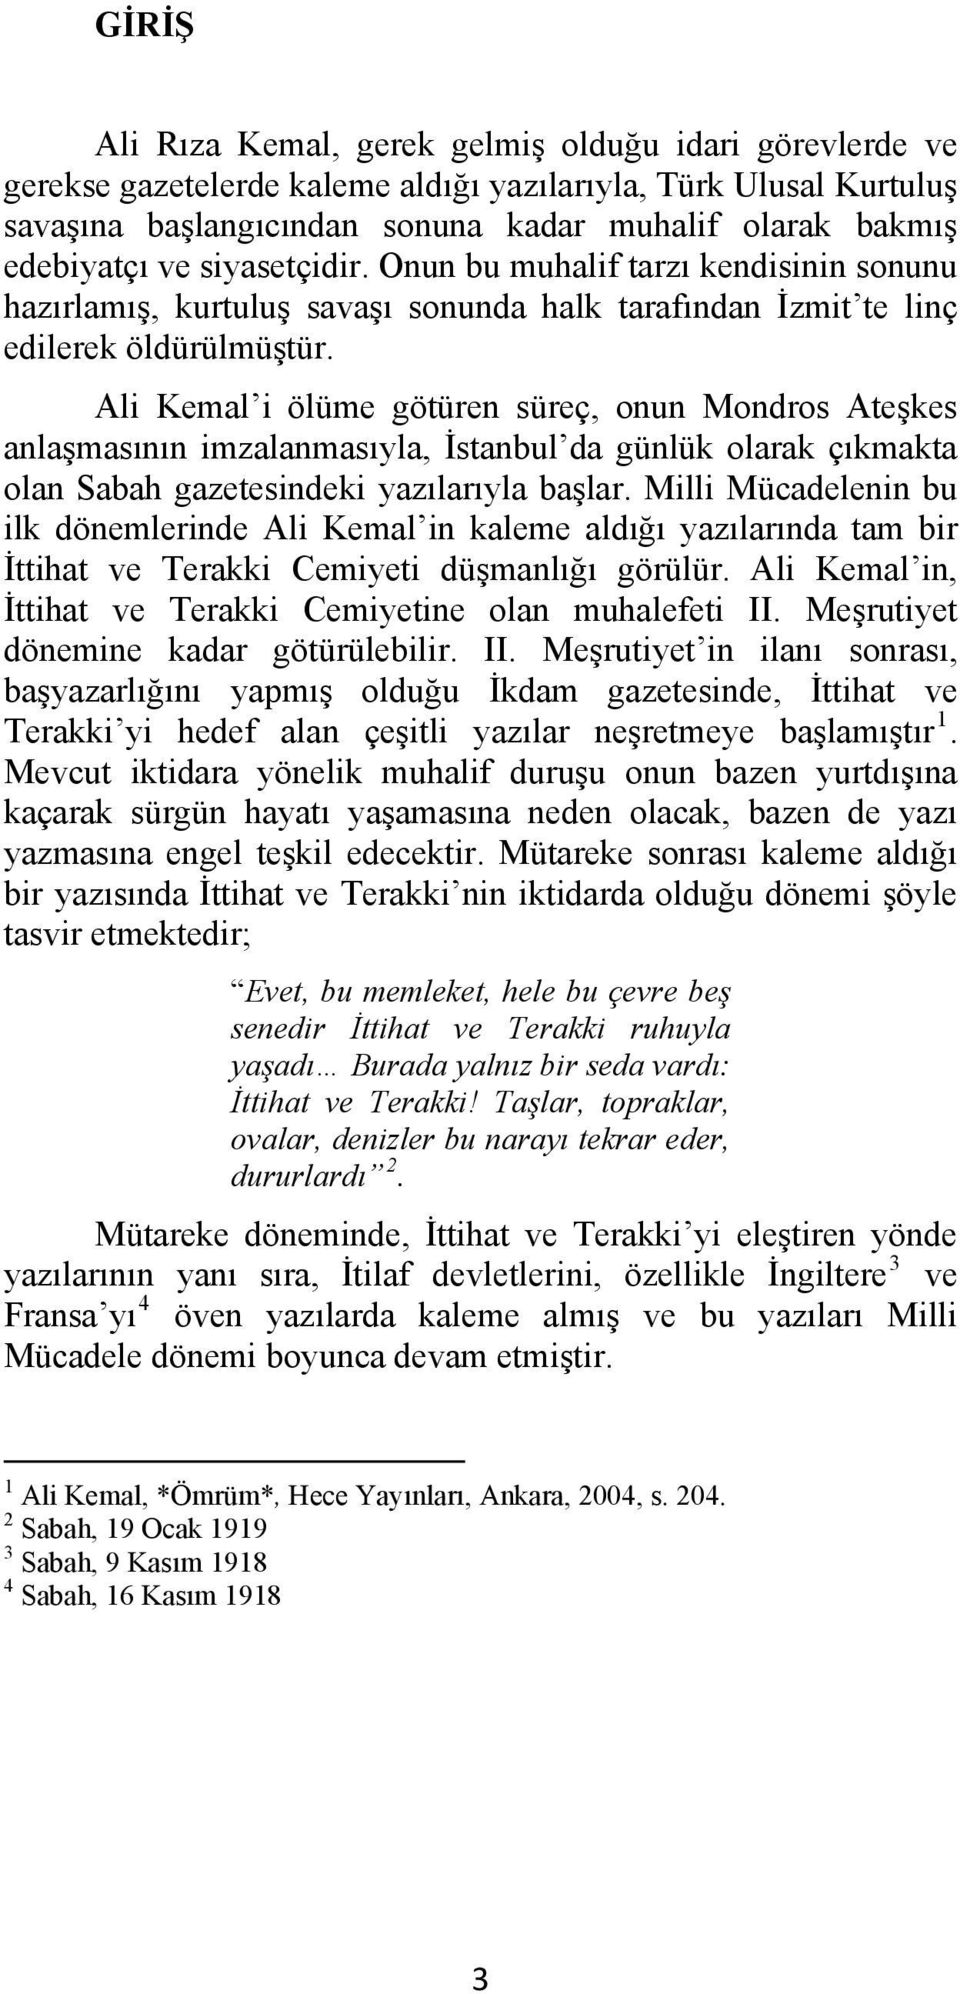 Ali Kemal i ölüme götüren süreç, onun Mondros Ateşkes anlaşmasının imzalanmasıyla, İstanbul da günlük olarak çıkmakta olan Sabah gazetesindeki yazılarıyla başlar.